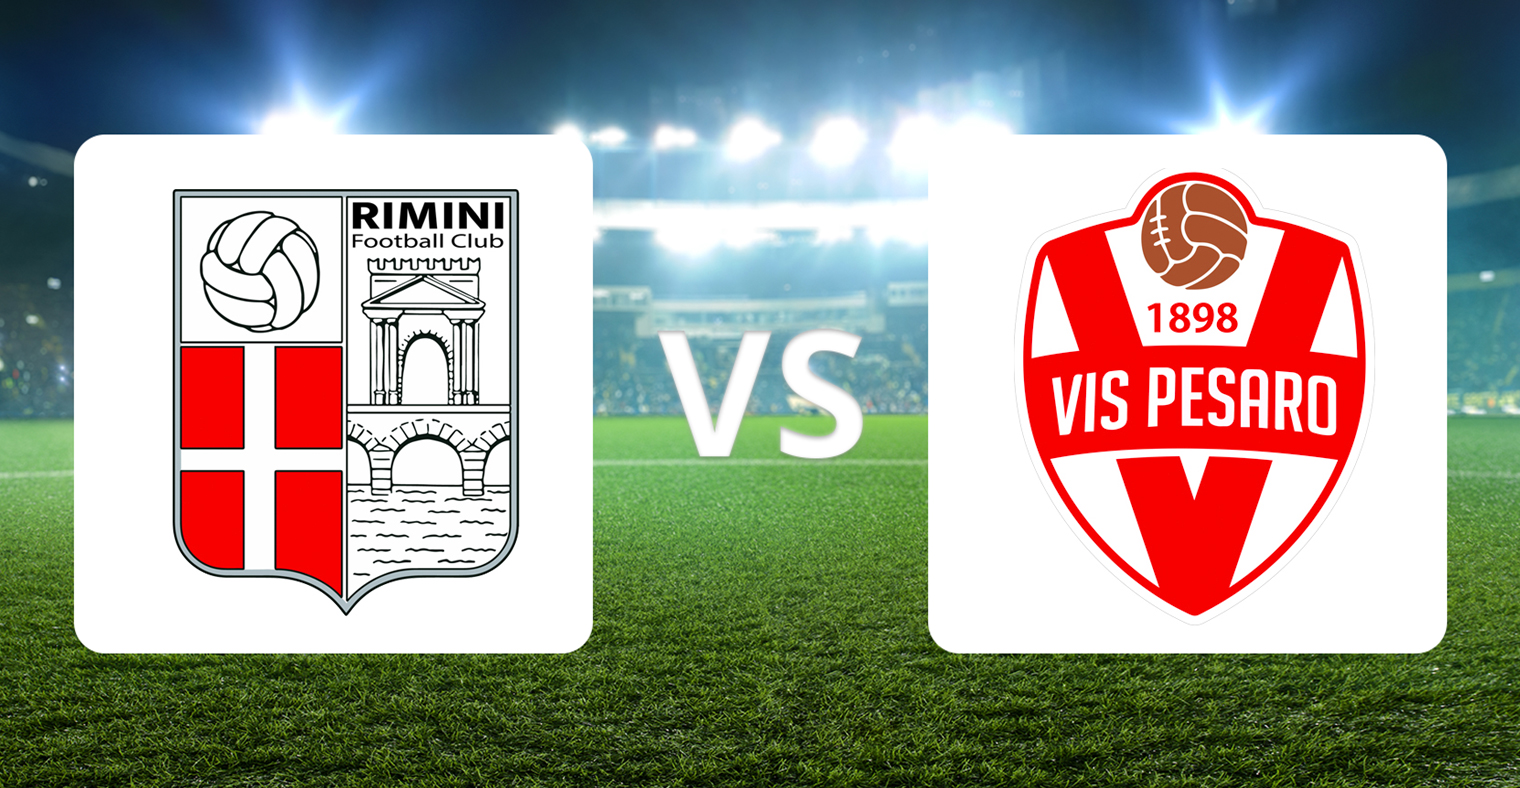 Rimini vs Vis Pesaro